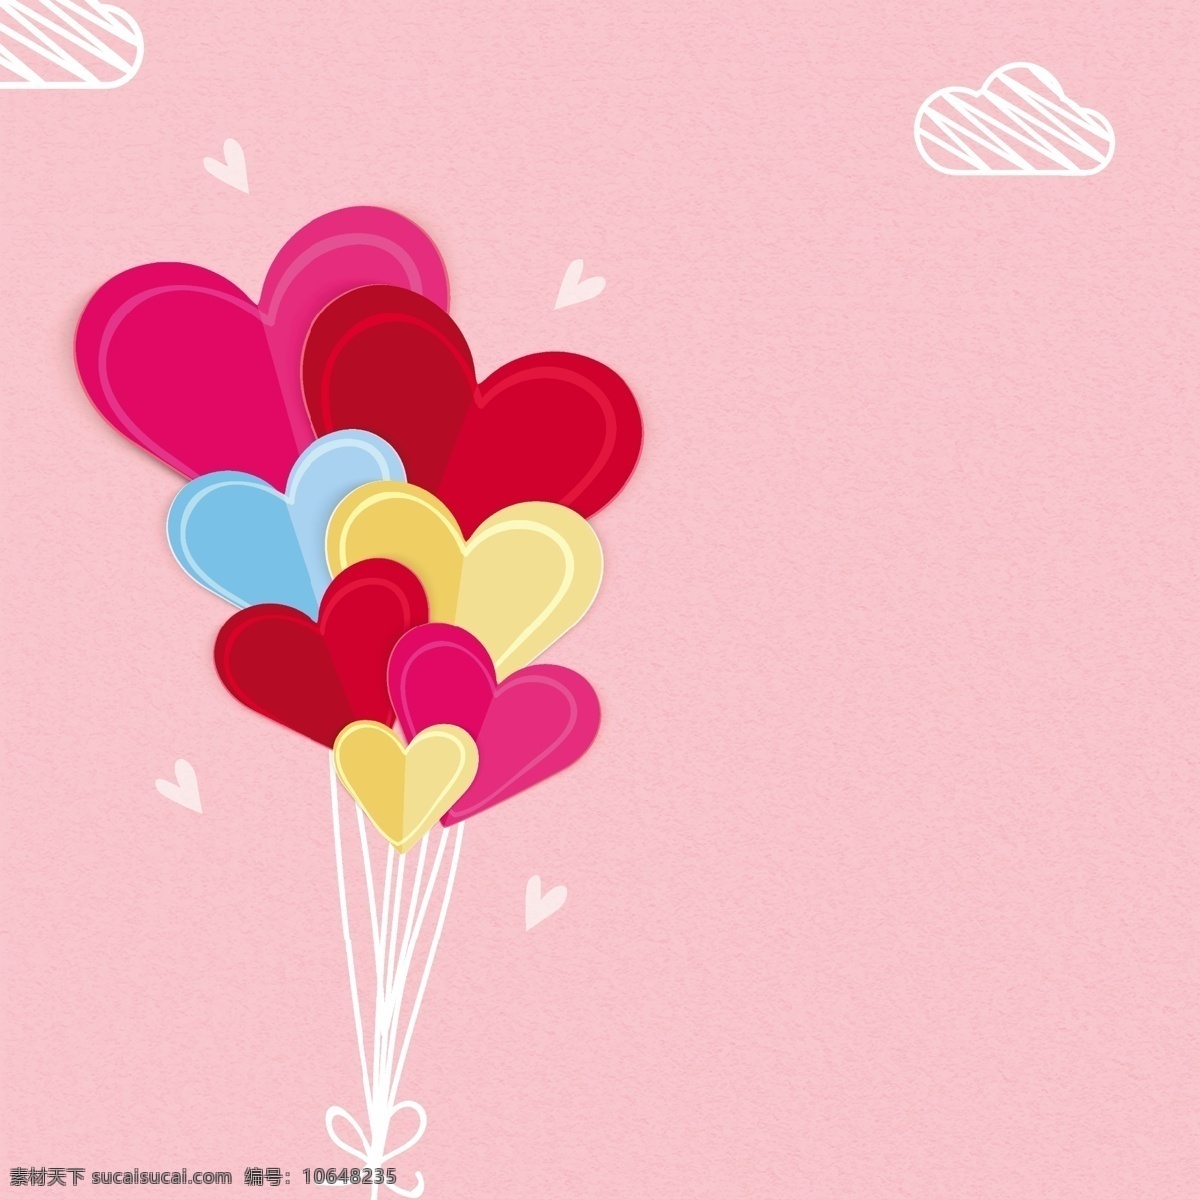 粉红色 背景 云和 气球 爱情 粉色 颜色 庆典 云彩 母亲节 母亲 装饰 多彩背景 妈妈 庆祝 爱情背景 白天 问候 背景颜色